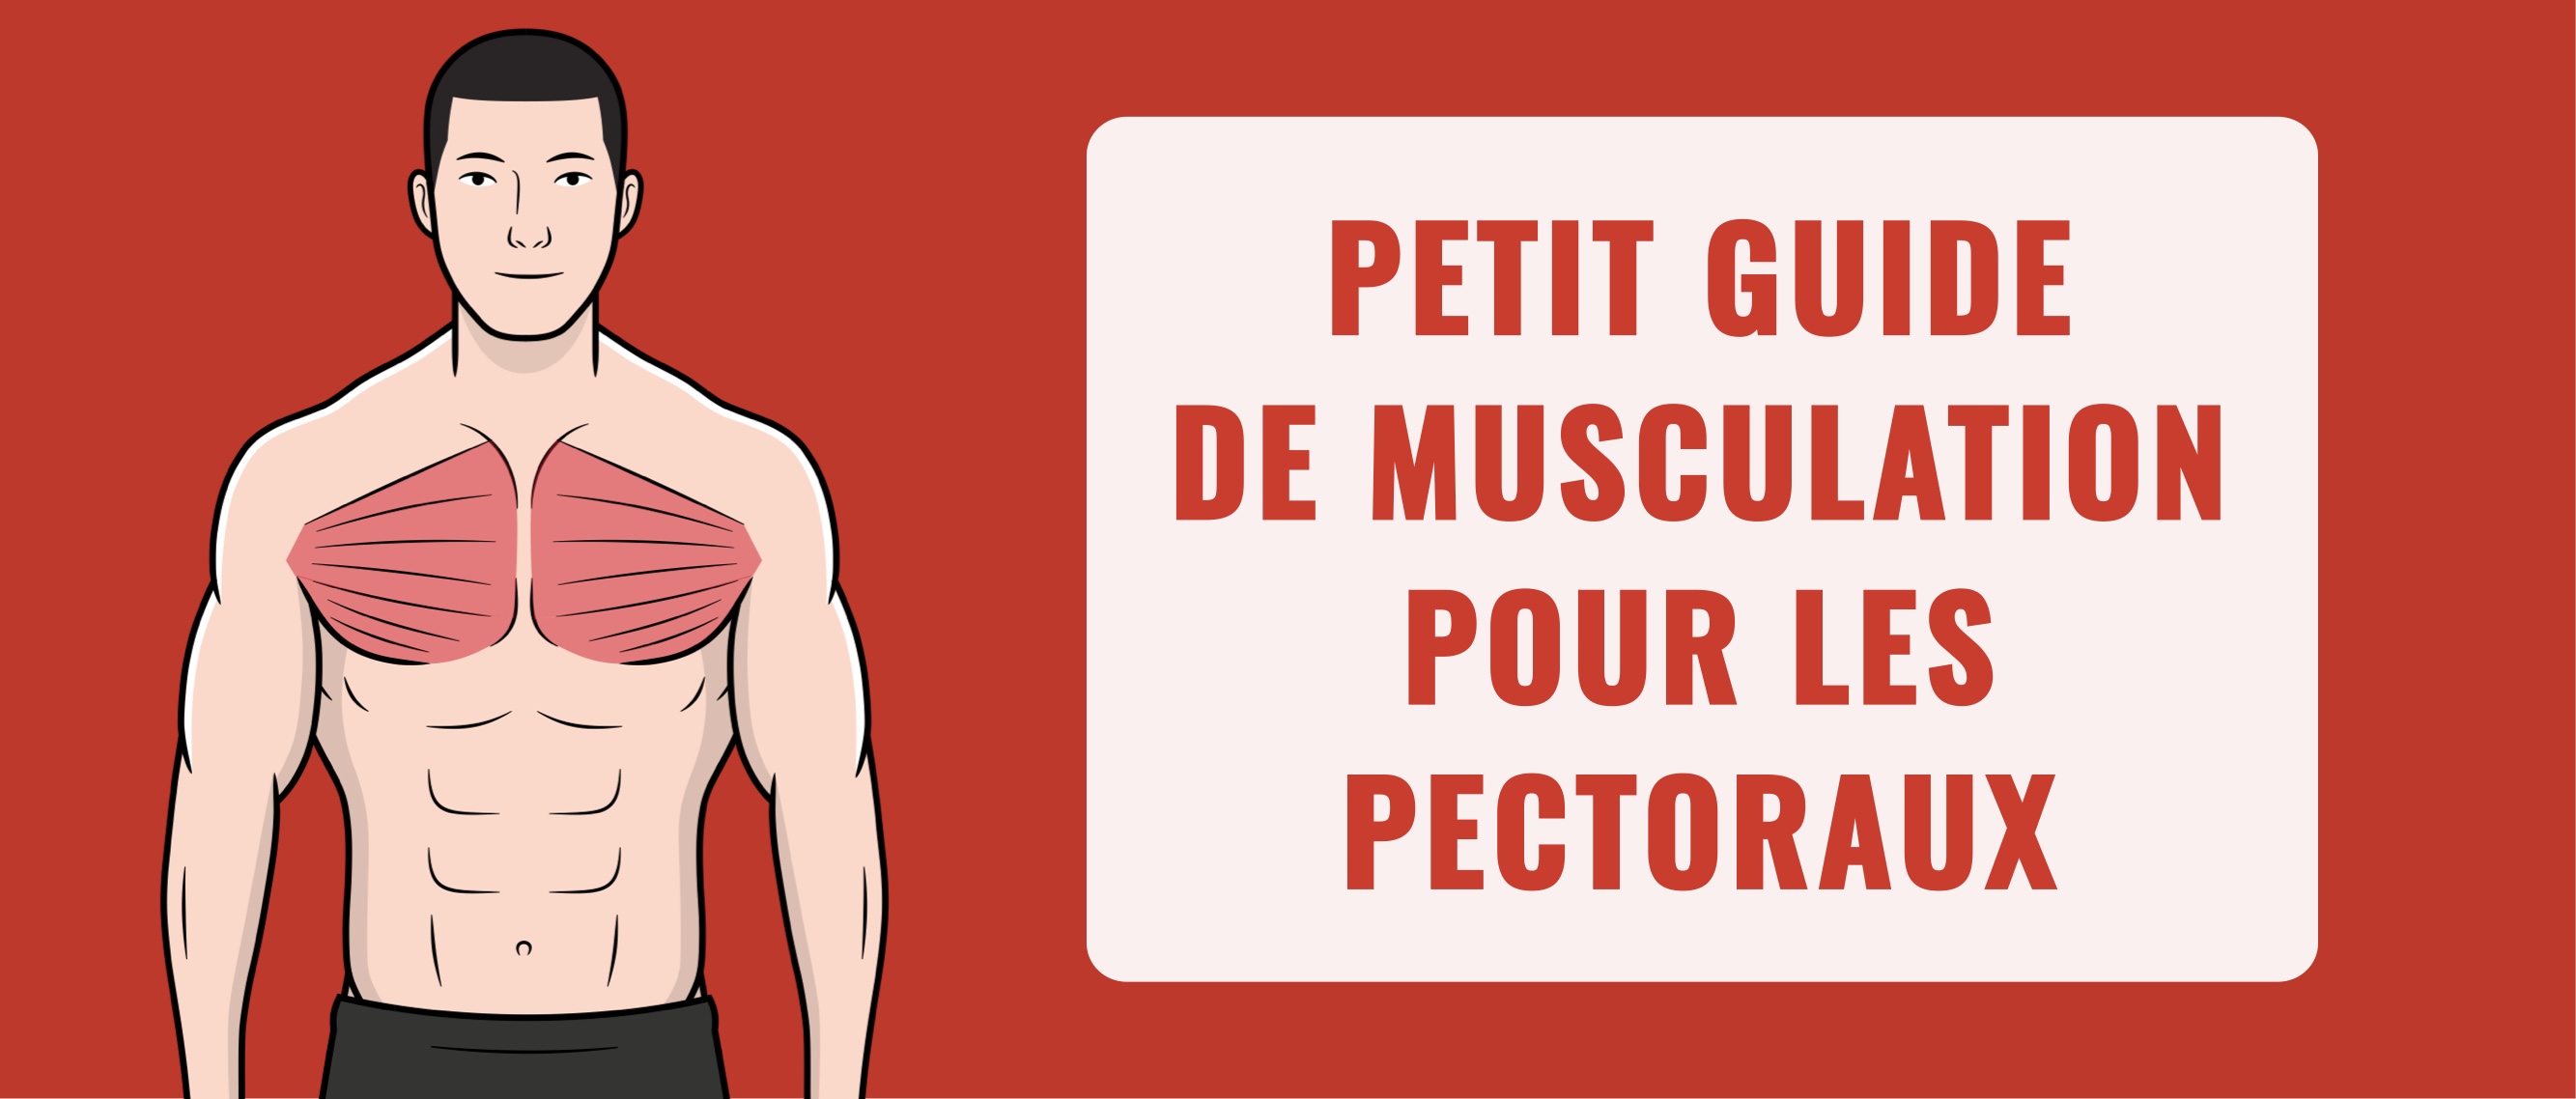 Petit guide de musculation des pectoraux